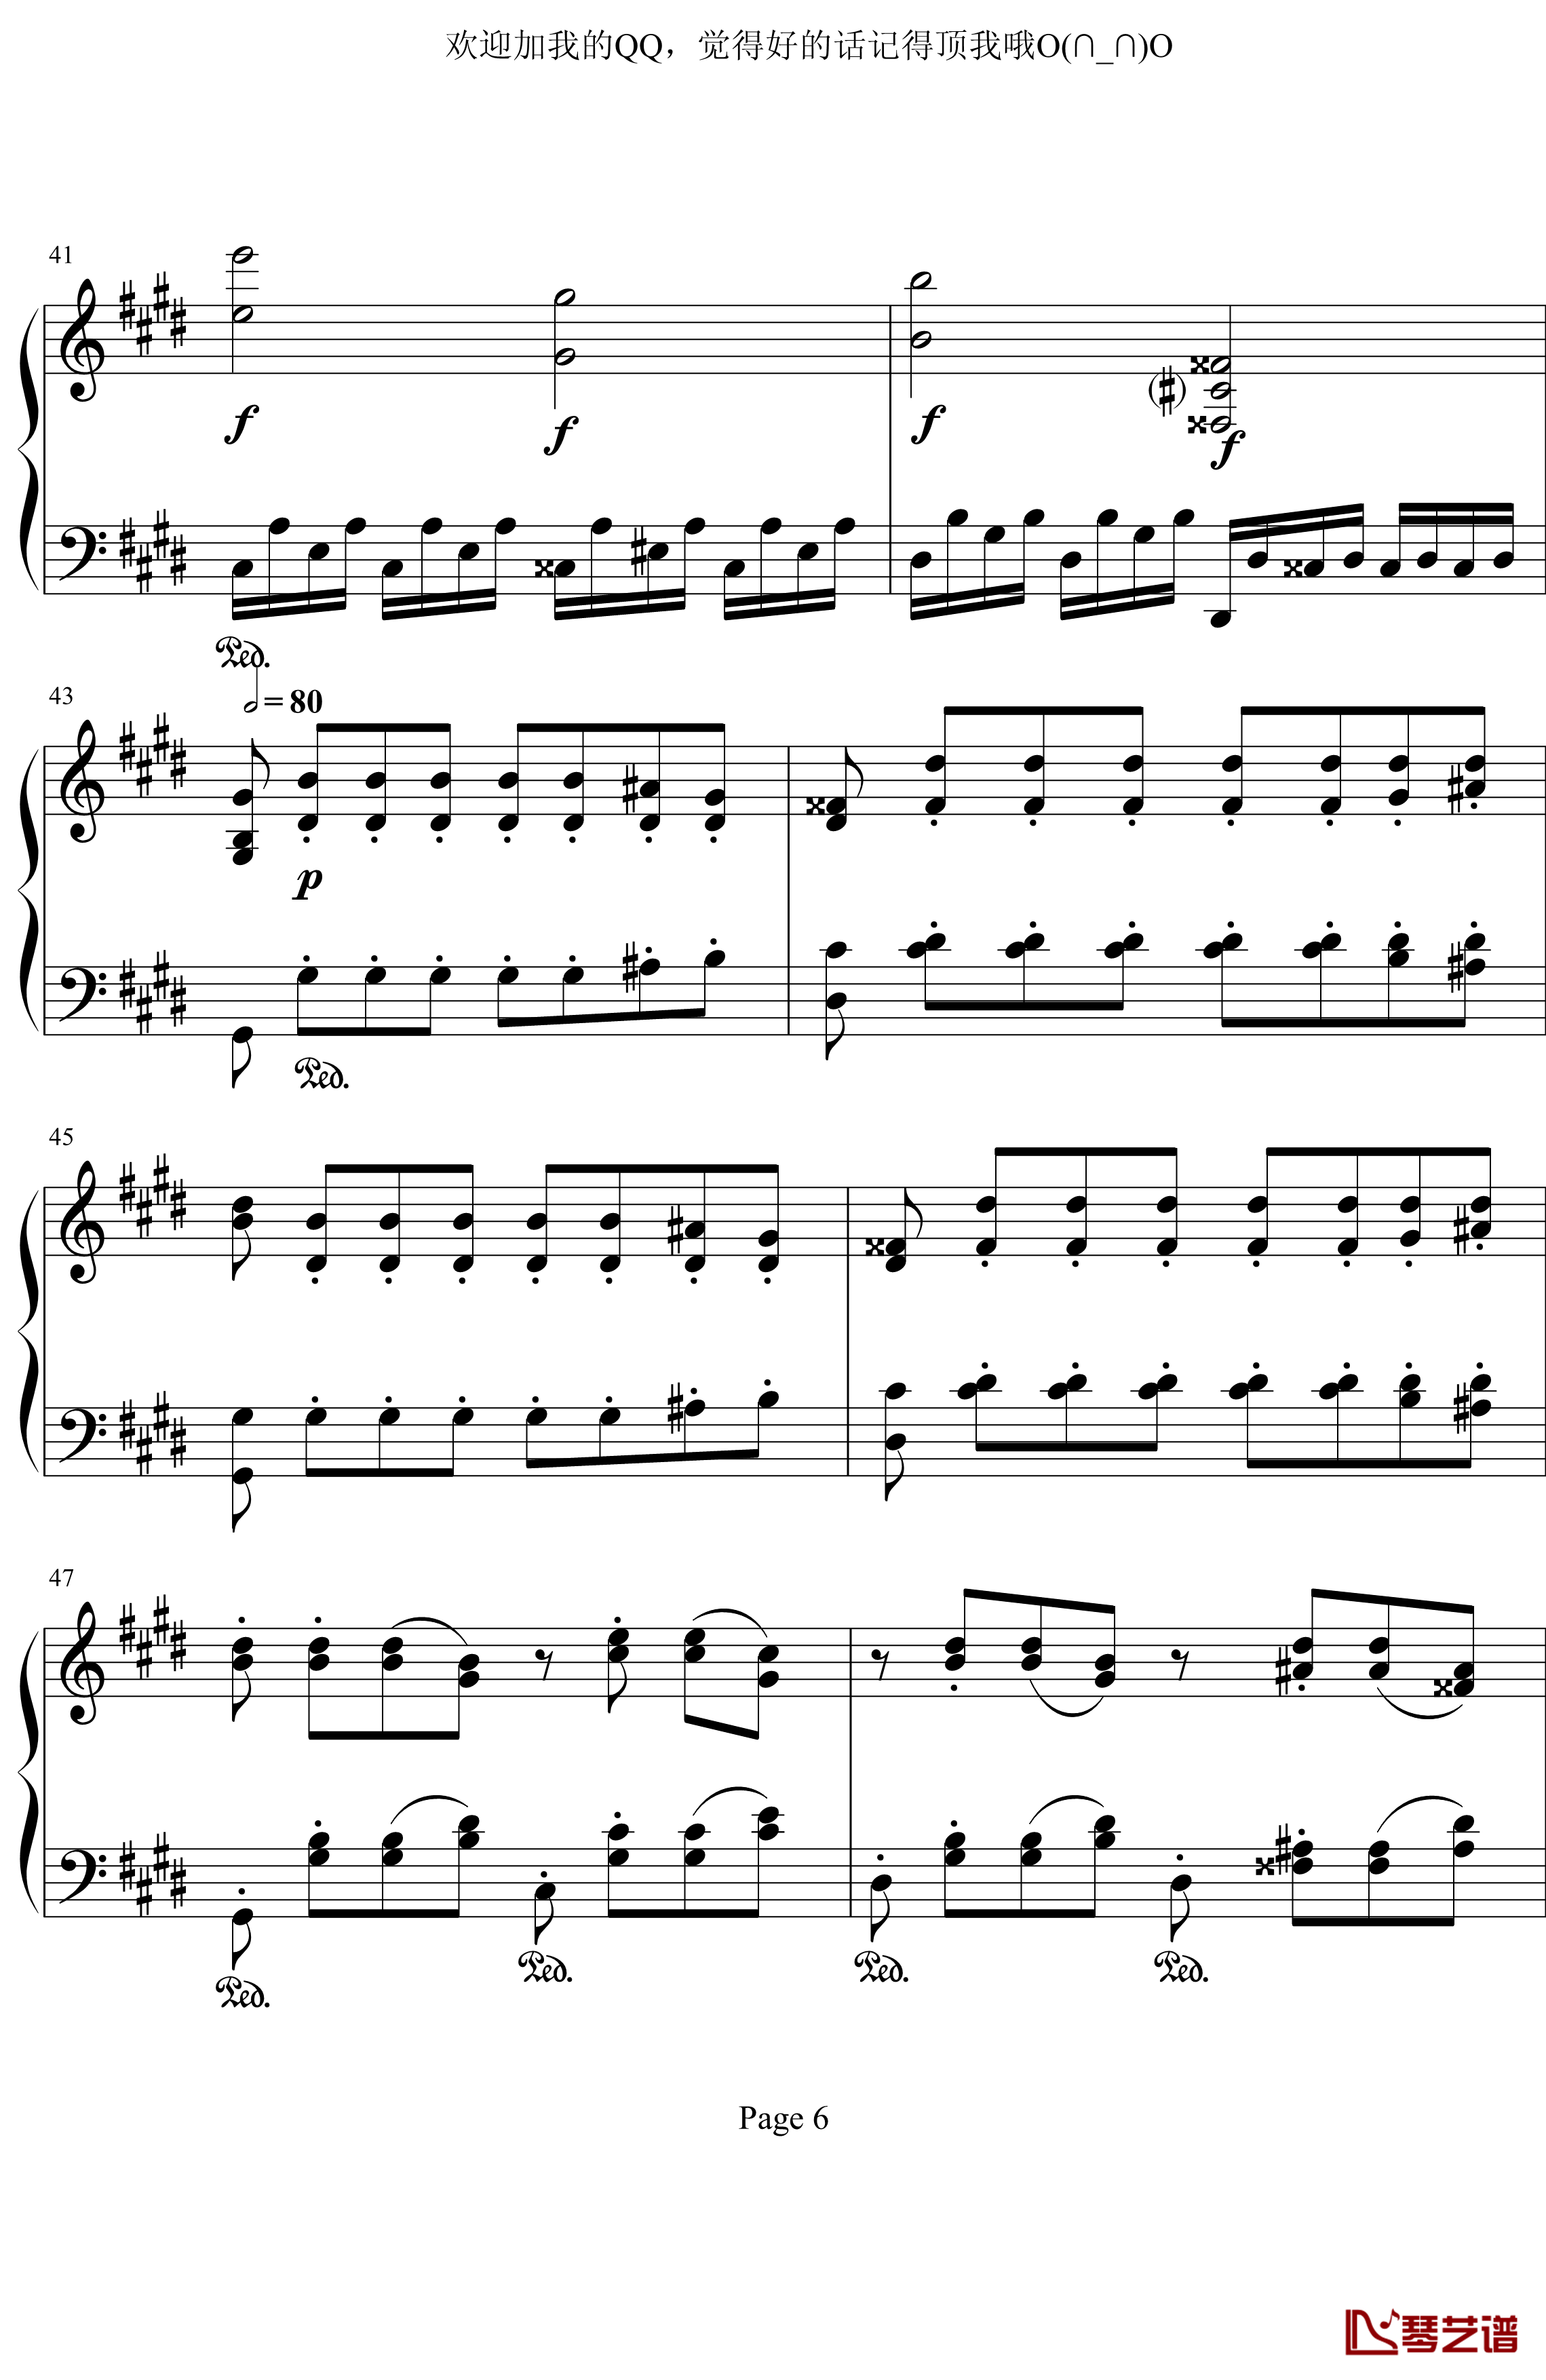 月光奏鸣曲第三乐章钢琴谱-贝多芬-beethoven6